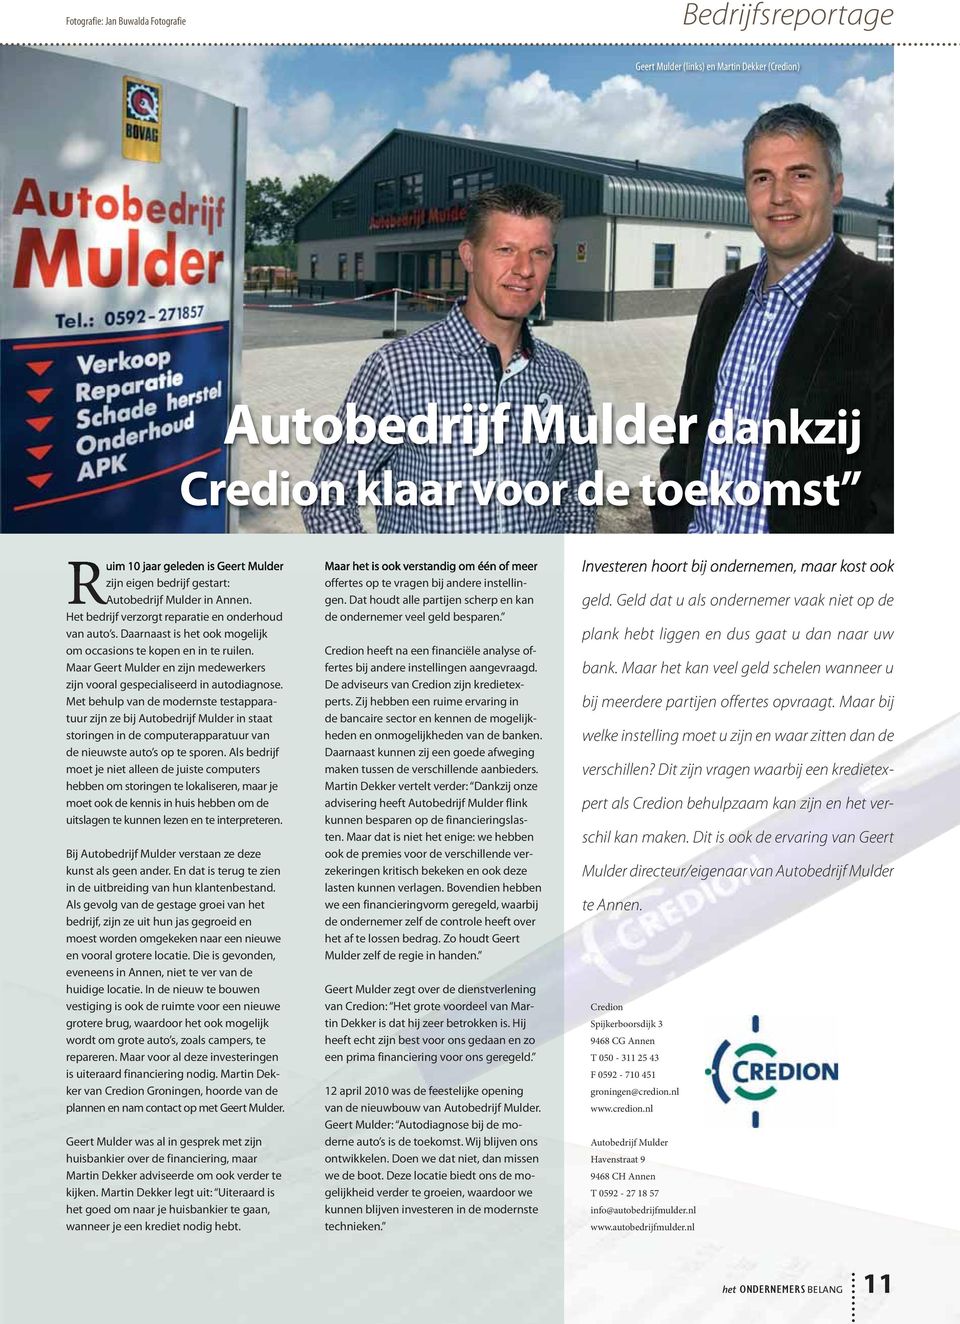 Maar Geert Mulder en zijn medewerkers zijn vooral gespecialiseerd in autodiagnose.